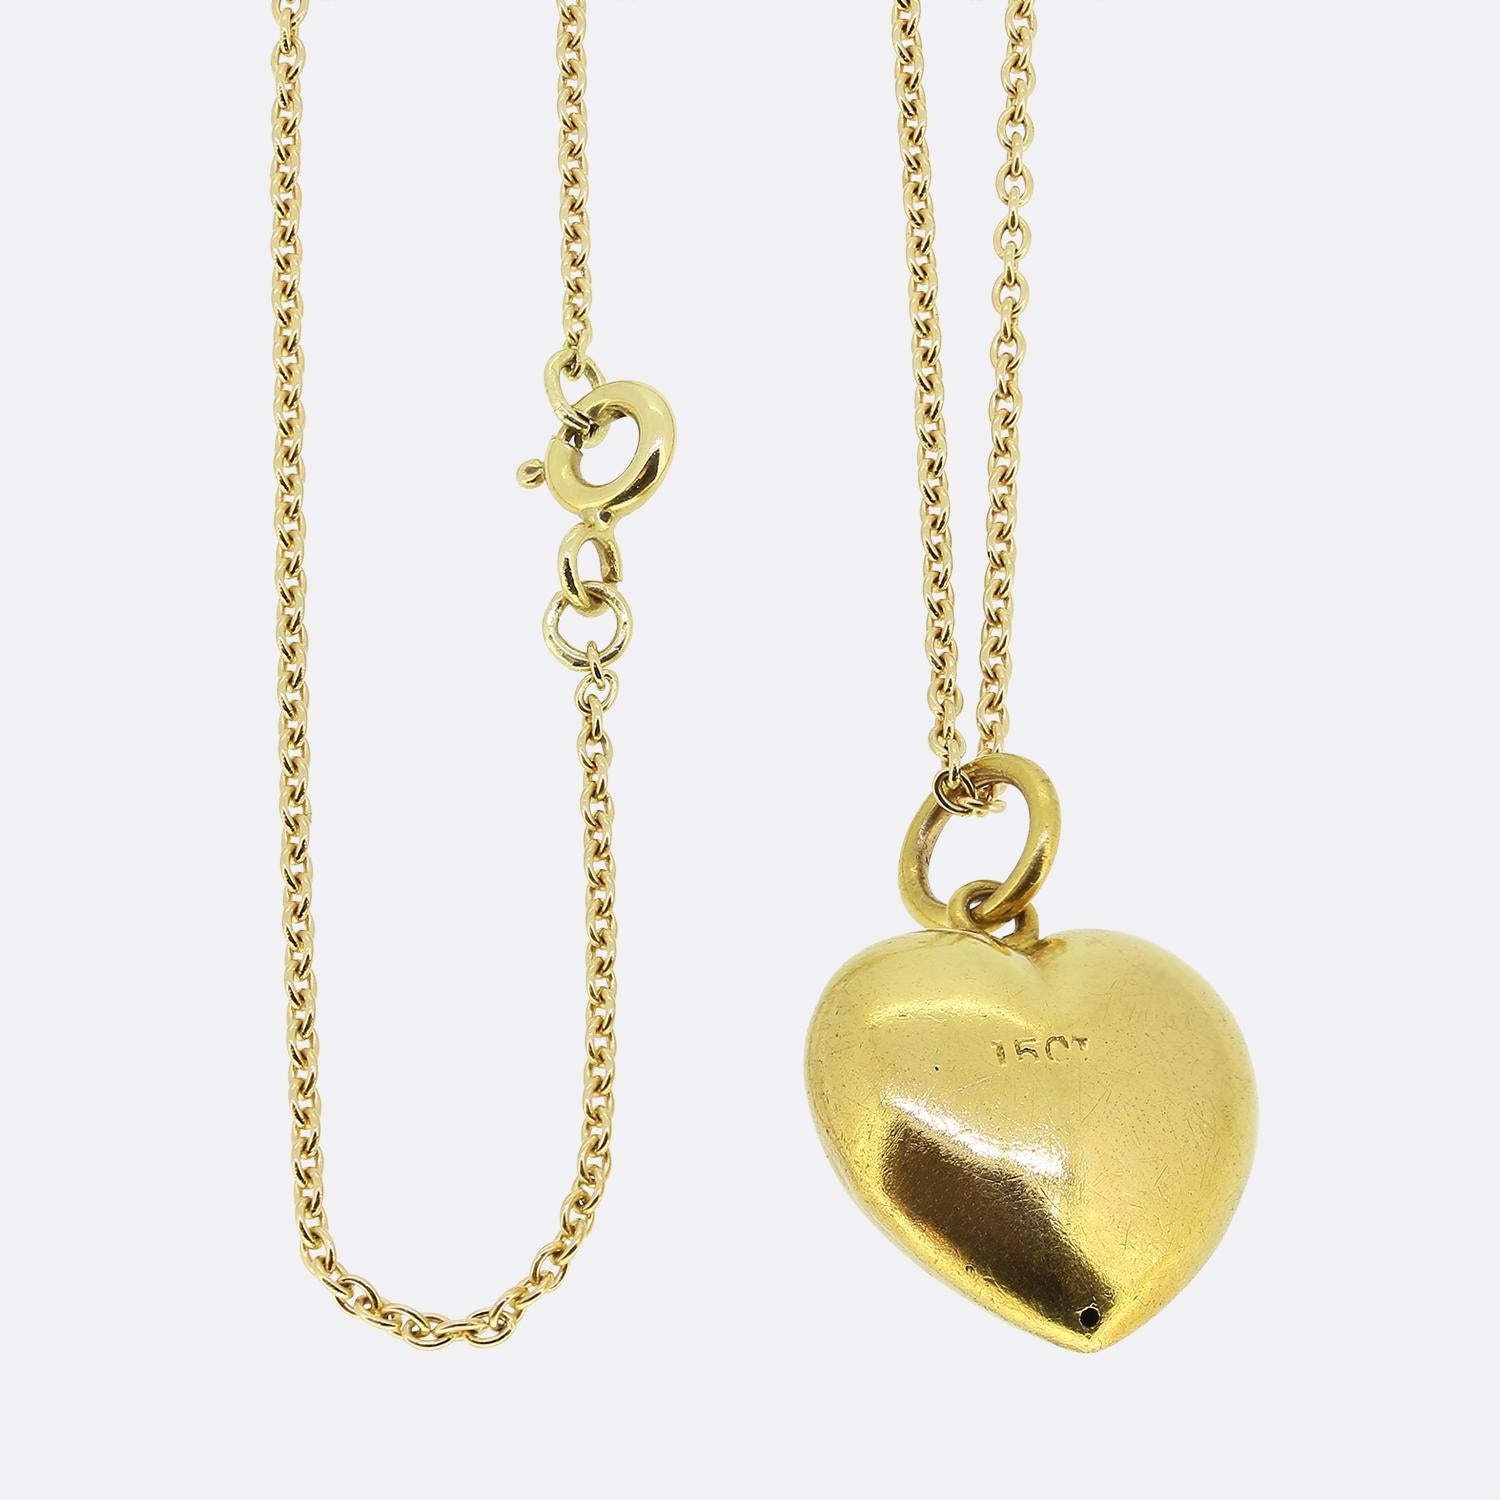 Nous avons ici un joli collier à pendentifs en perles. Ce pendentif antique a été réalisé en or jaune 15ct en forme de petit cœur d'amour. La pièce a ensuite été expertement sertie d'une seule perle naturelle de forme ronde au centre, avec une